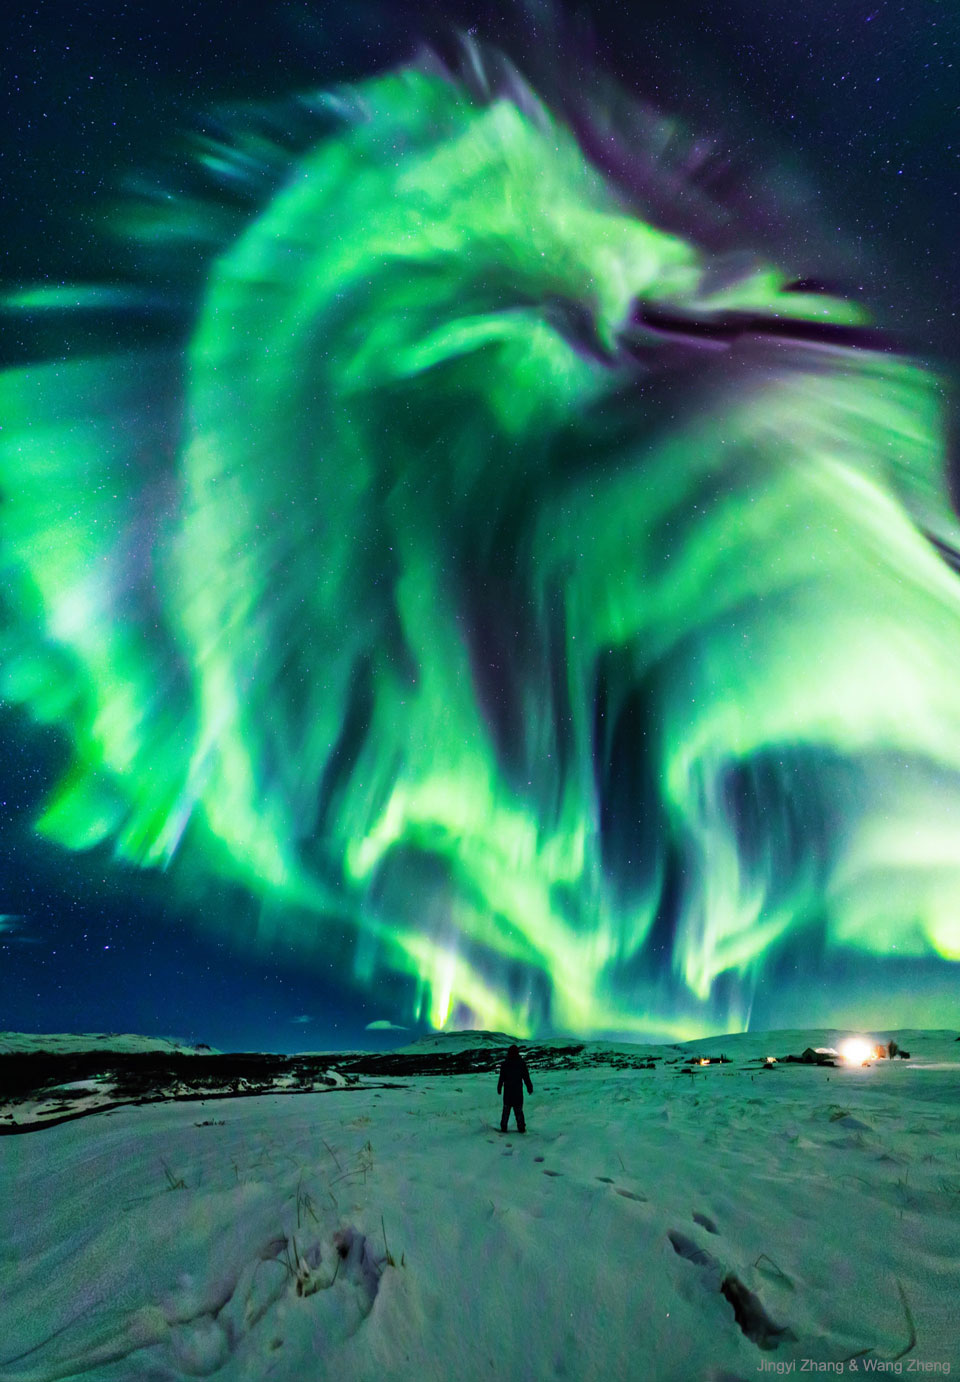 In einer verschneiten, grün beleuchteten Landschaft steht in der Mitte in einiger Entfernung eine Person. Am Himmel strahlt ein Polarlicht, das an einen Drachen erinnert.